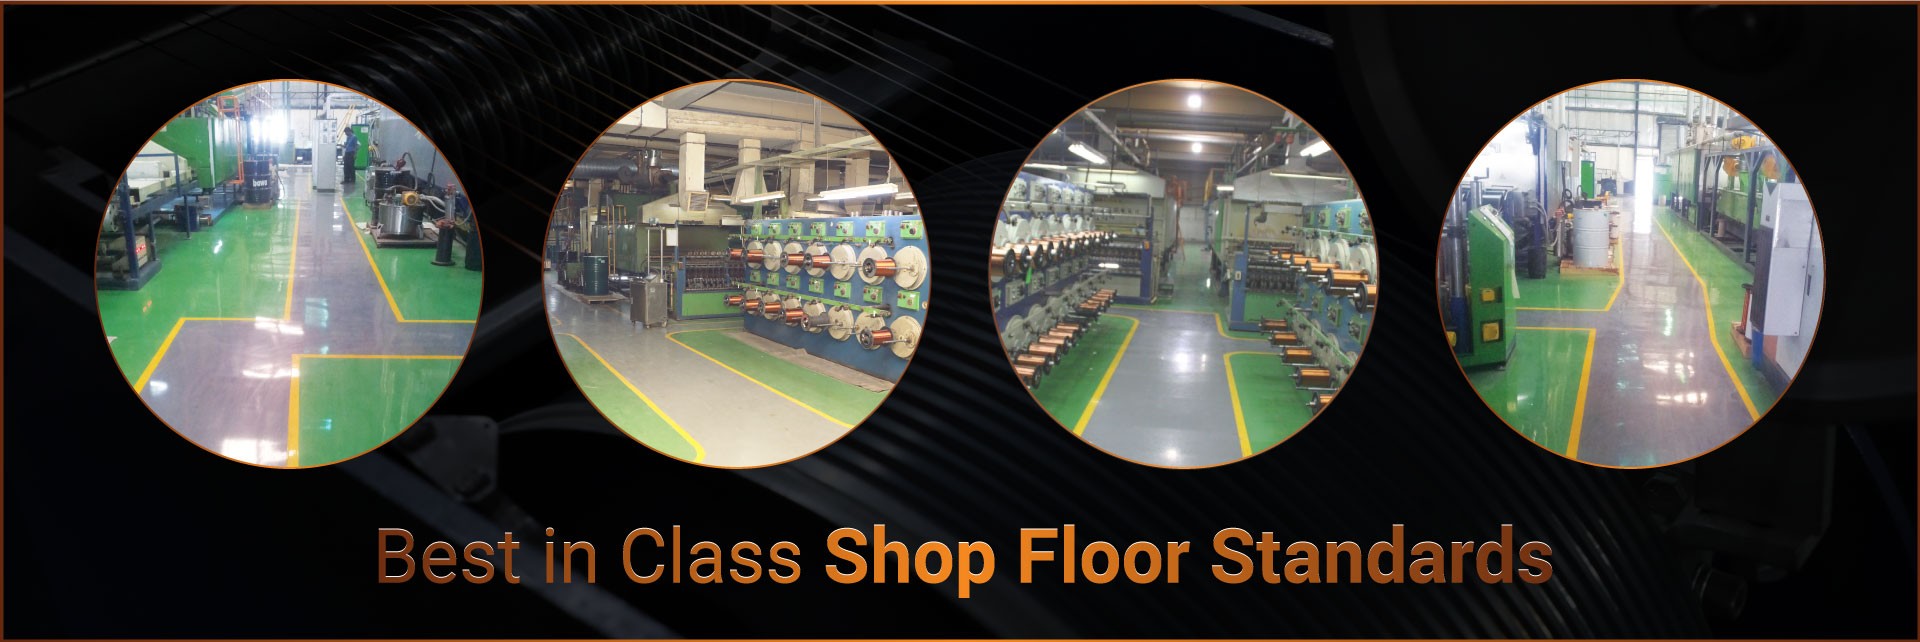 Best-in-class-shop-floor-standards